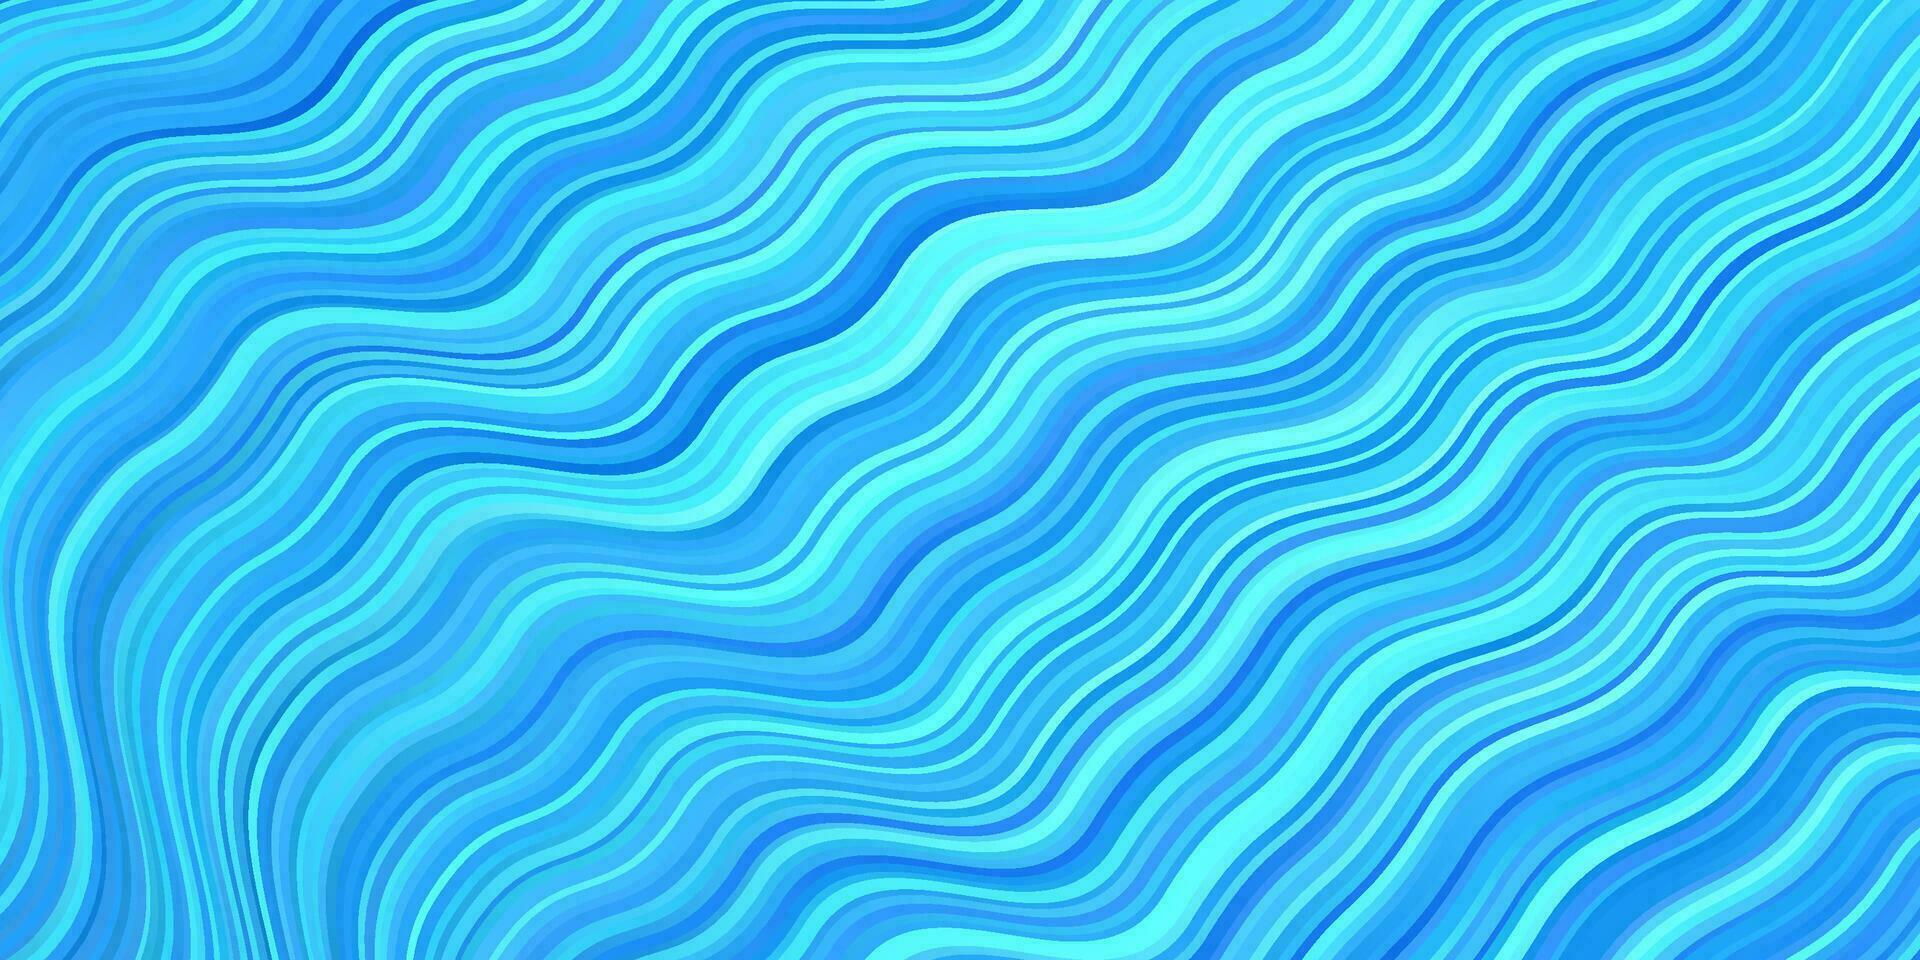 ljusblå vektor bakgrund med kurvor.